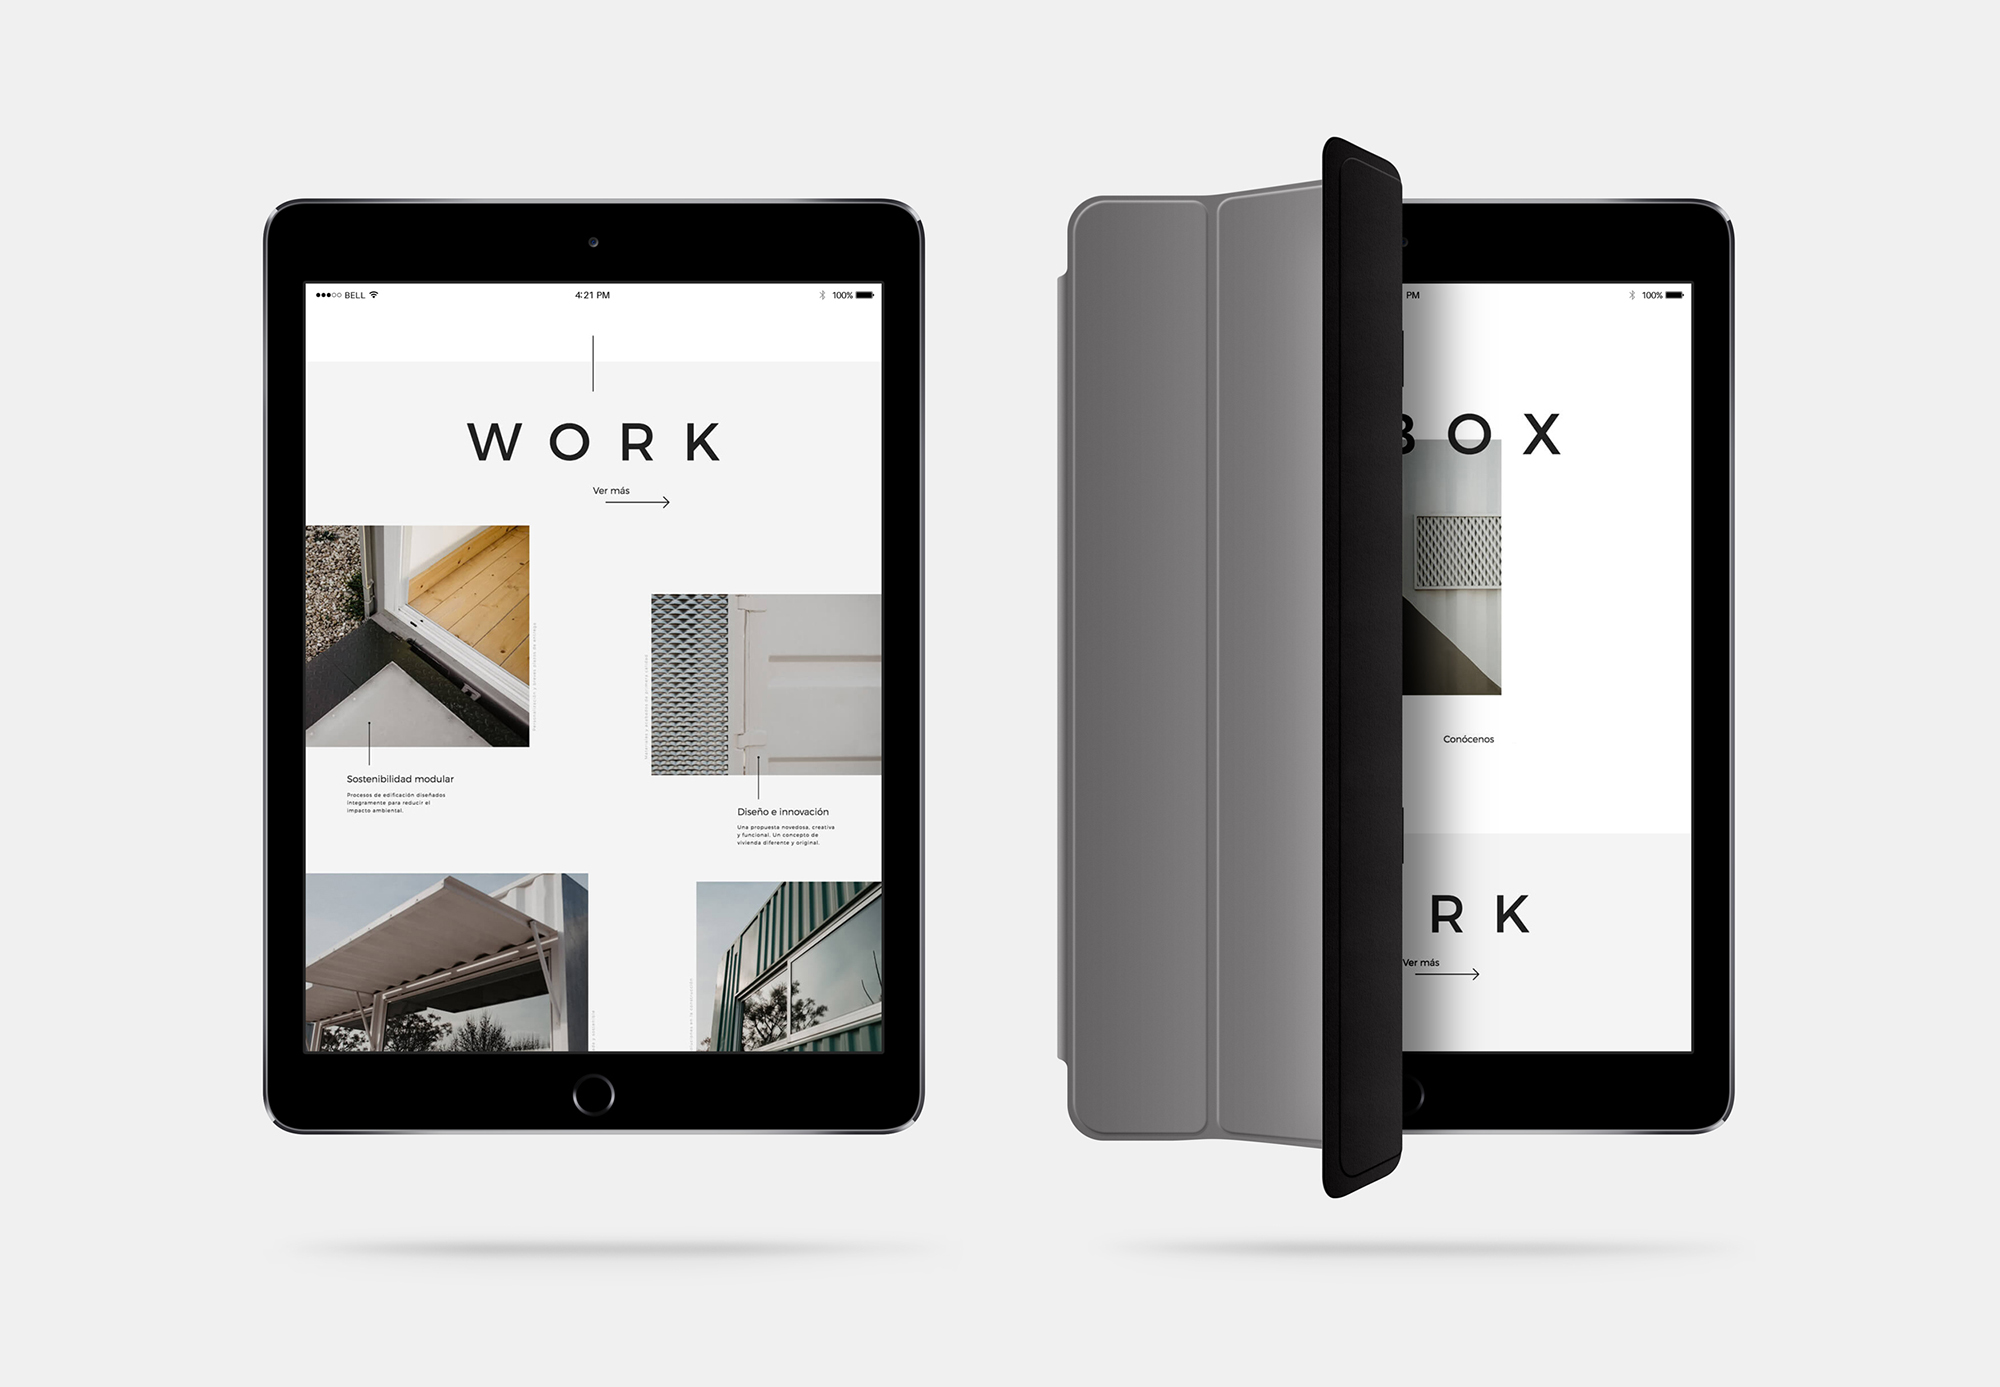 Diseño y desarrollo de website corporativo para Be-Box. Vista detalle iPad Air.